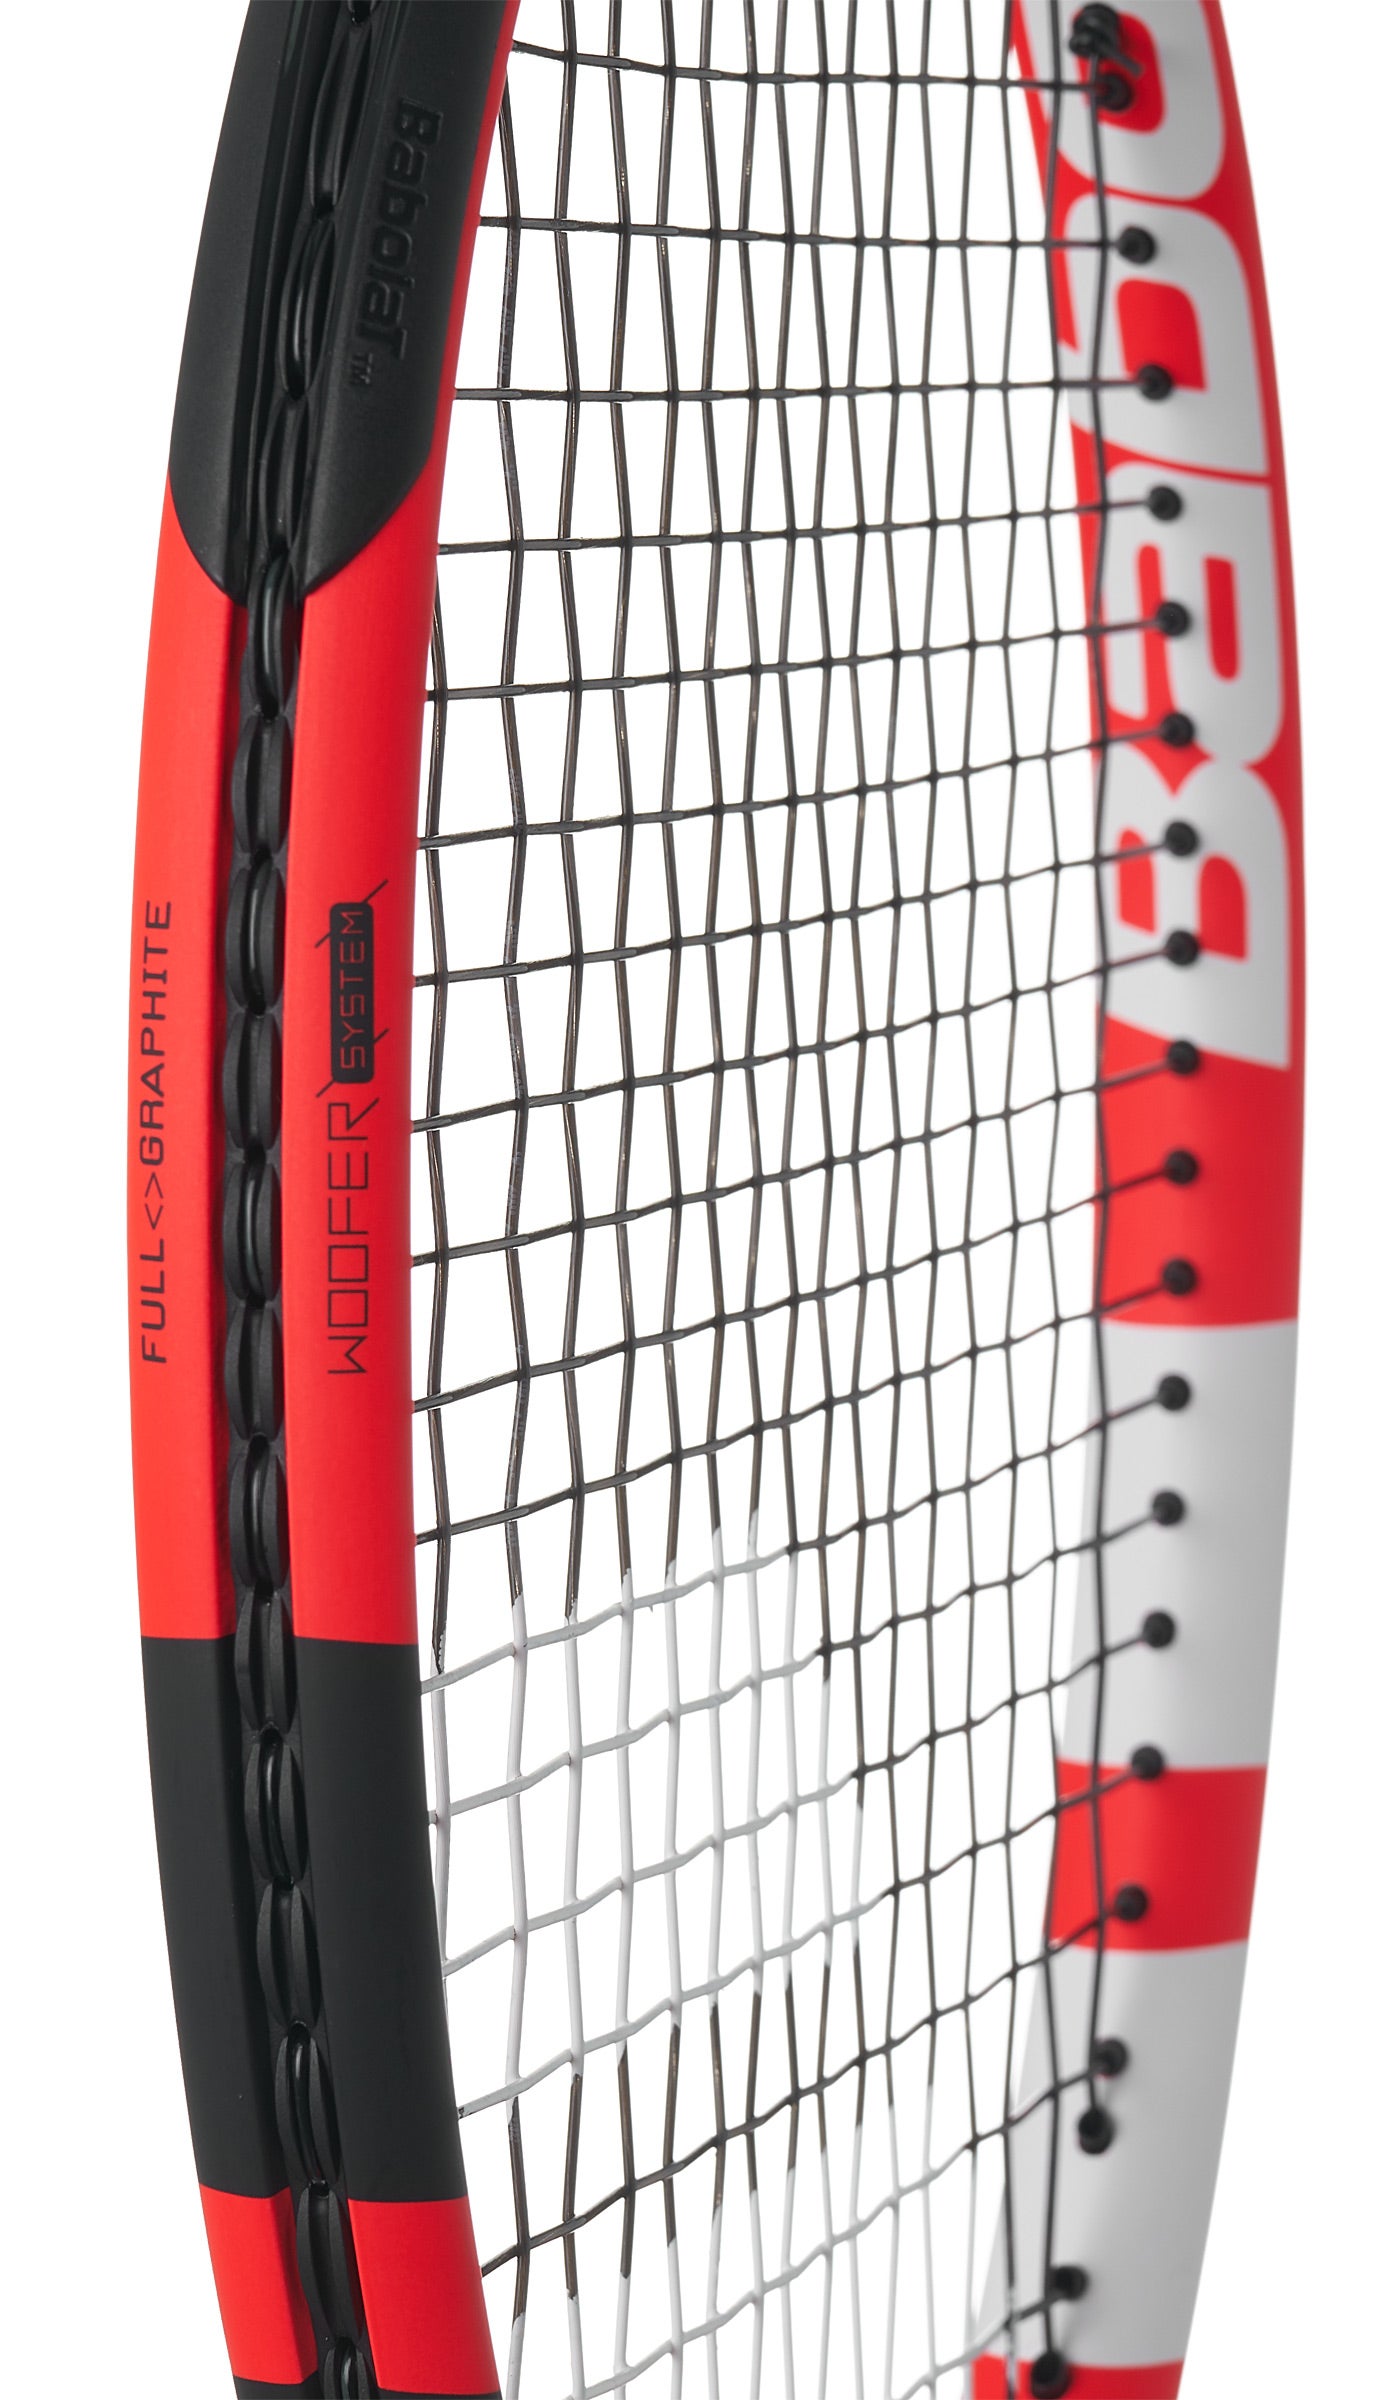 Babolat Boost S Tennis Racquet Racket Grip 2 4 1/4 TN1740F Woofer Technology 